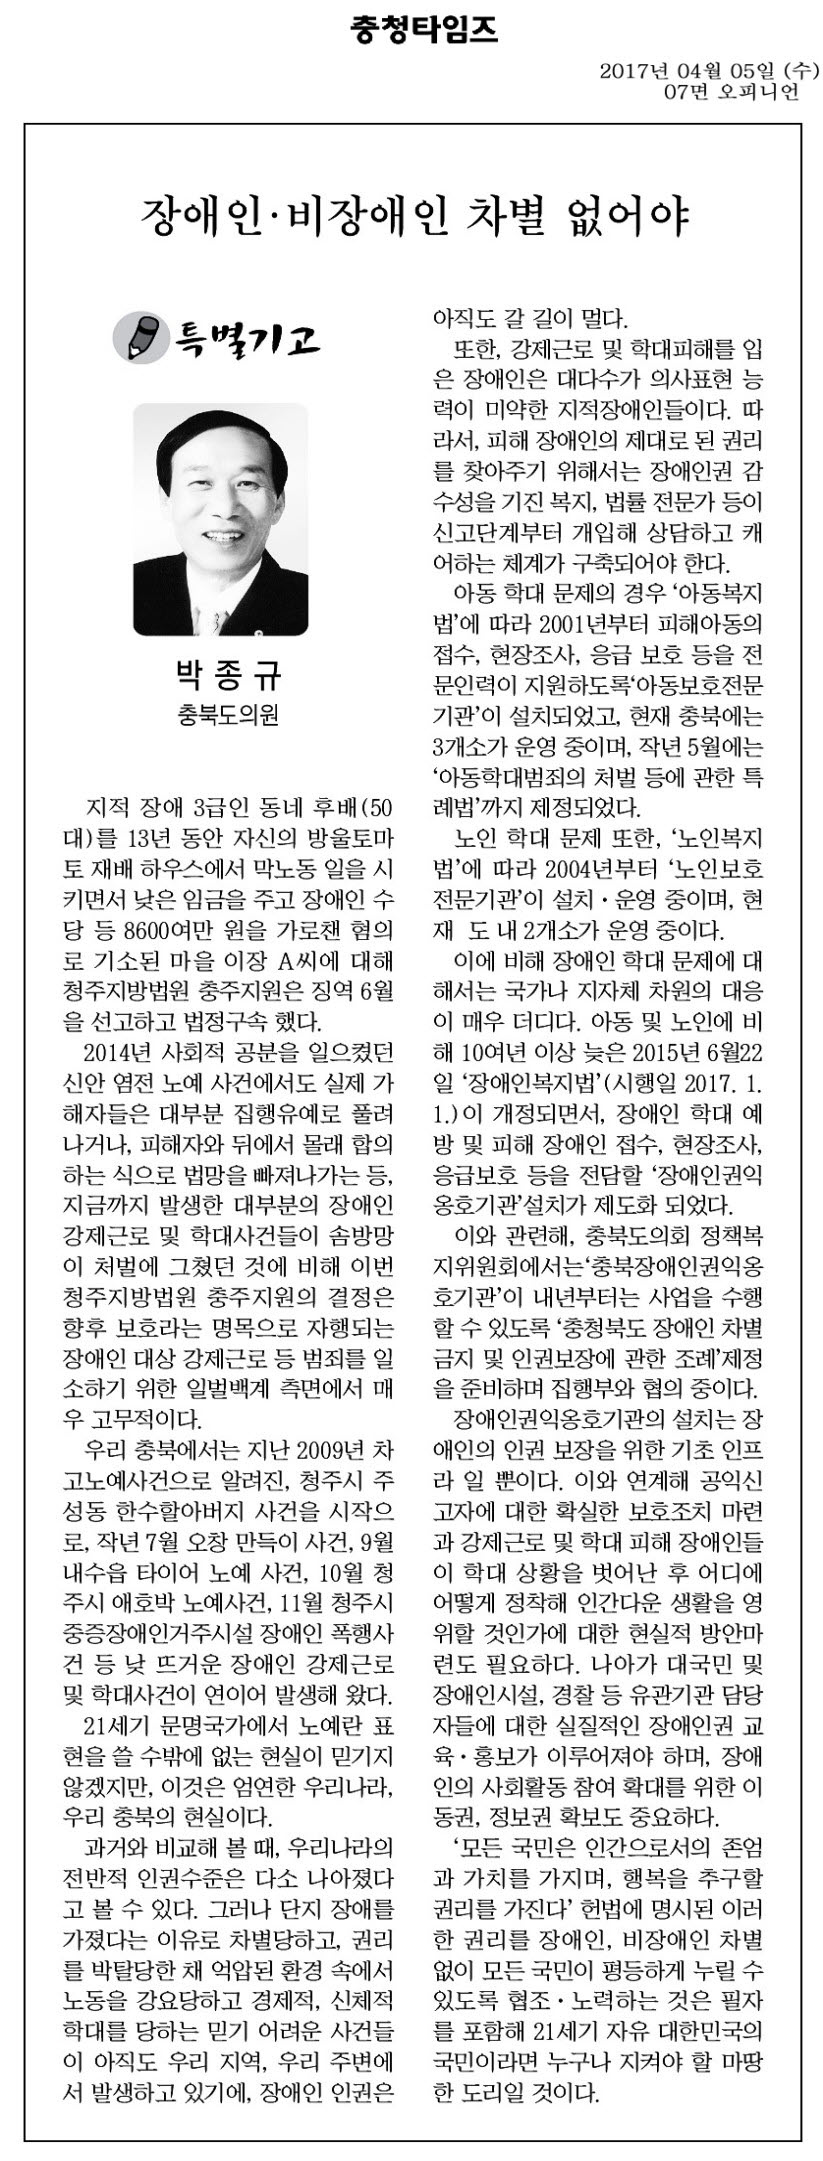 장애인 비장애인 차별없애야 - 박종규 의원(충청타임즈 2017년 4월 5일) - 1